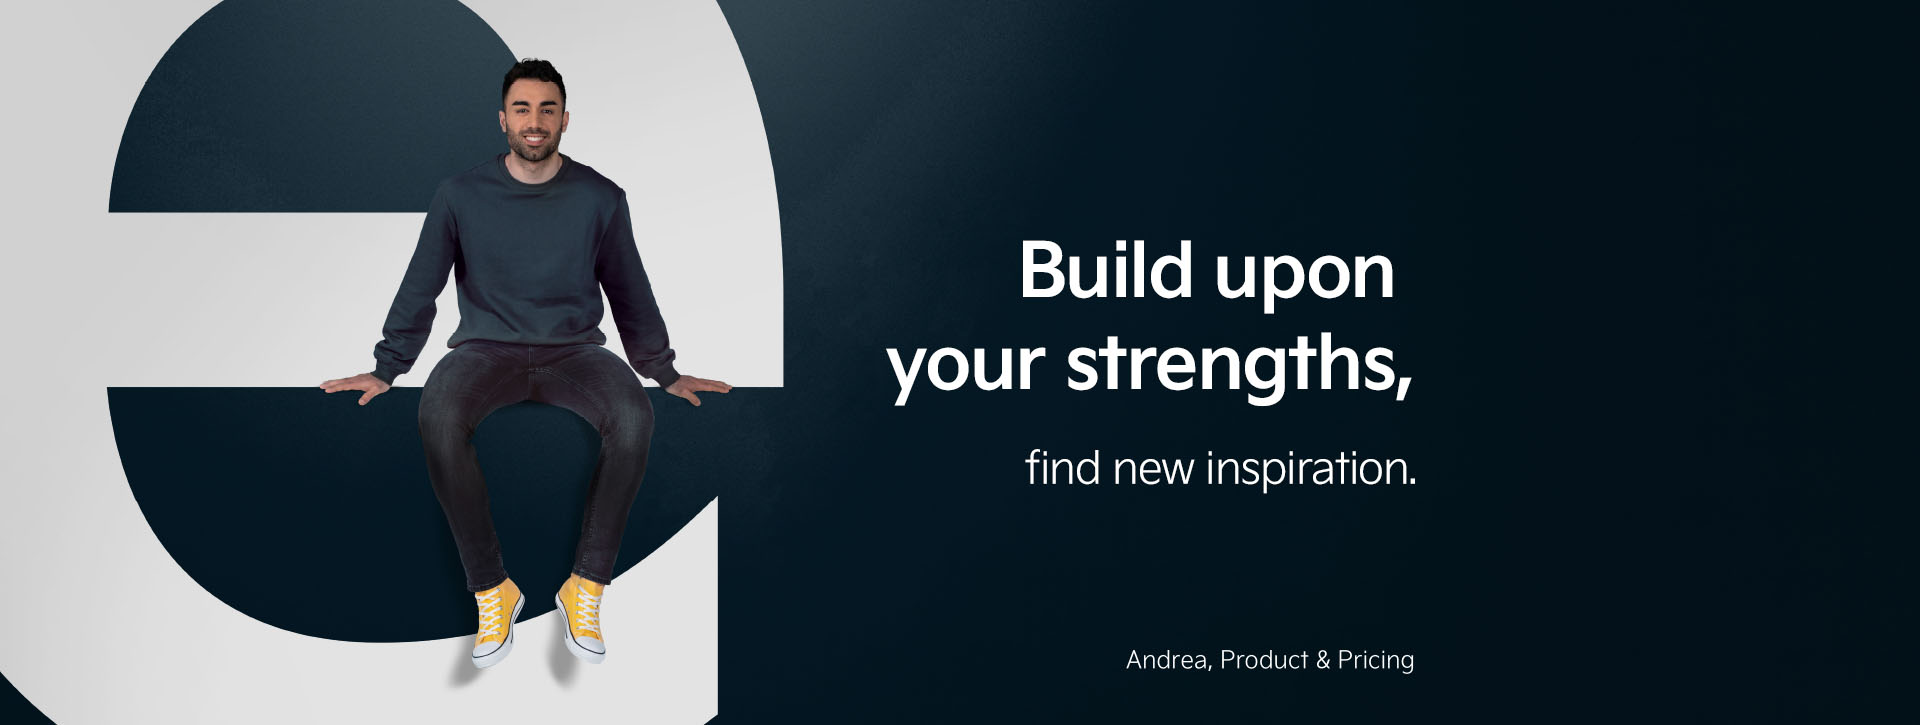 Andrea aus unserer Produkt- und Preisabteilung sitzt auf dem Buchstaben "e". Neben ihm finden wir die Aussage "Baue auf deine Stärken - finde neue Inspiration".